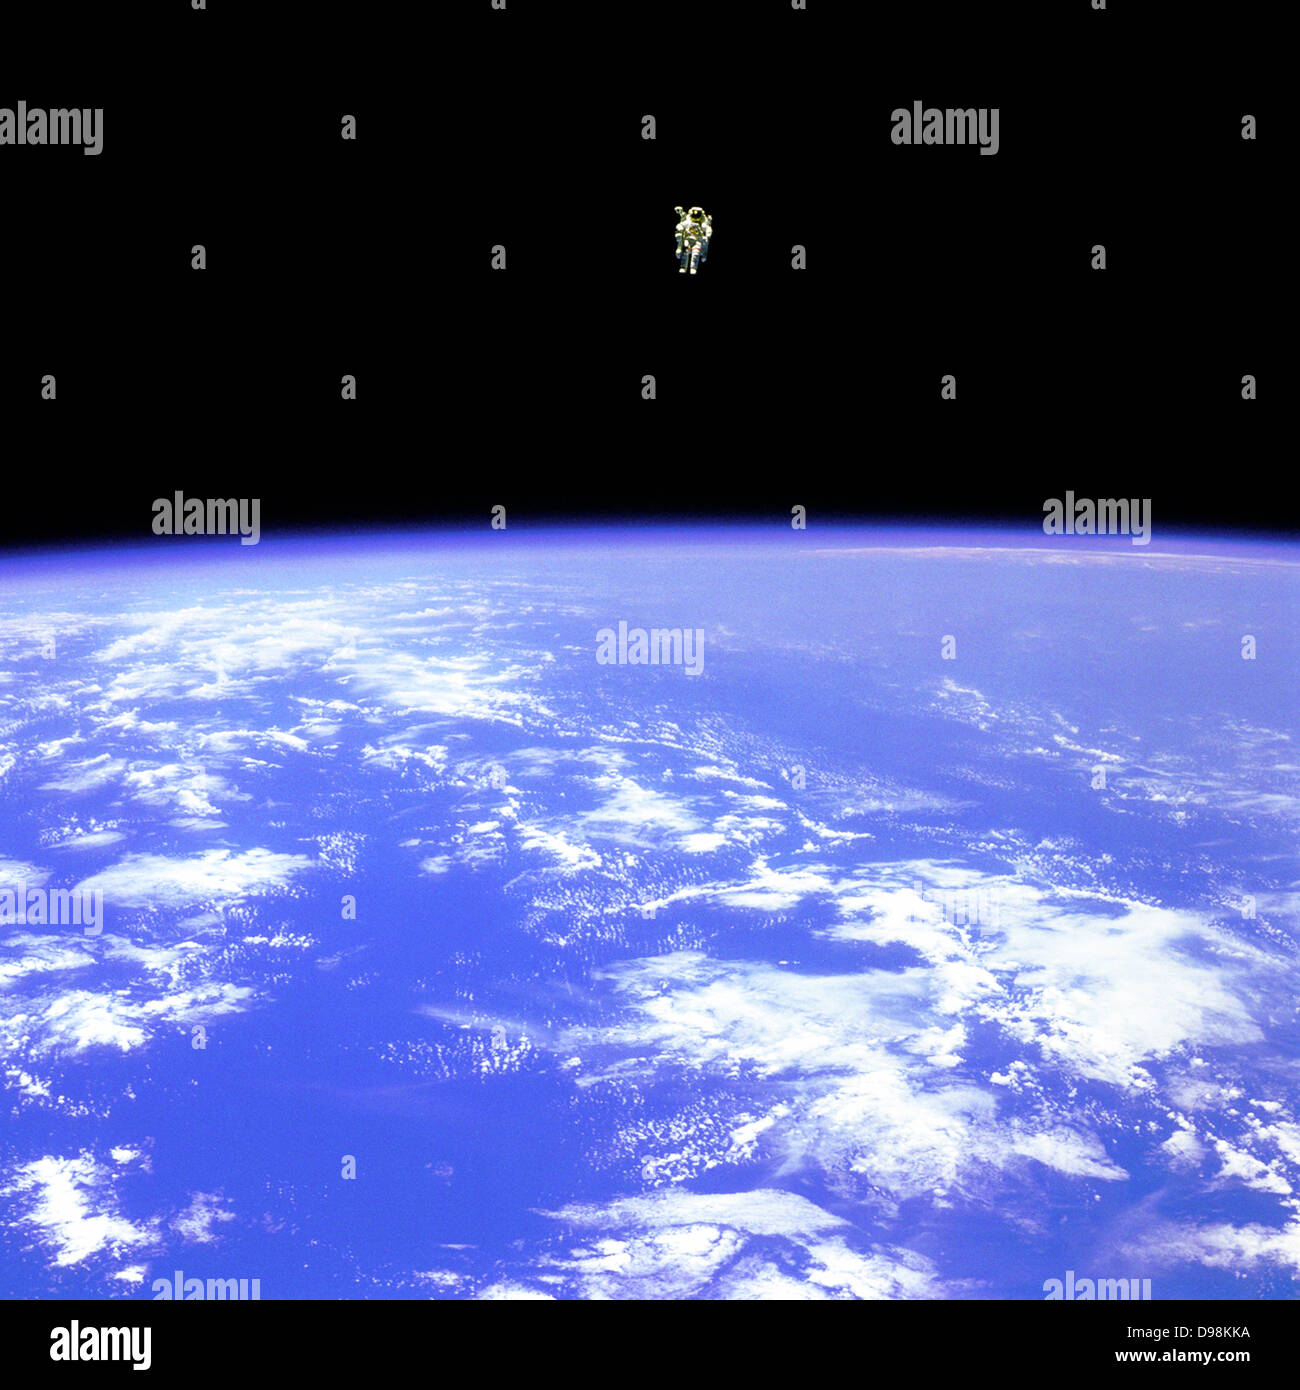 Illustré d'un astronaute flottant dans l'espace au-dessus de la terre Banque D'Images